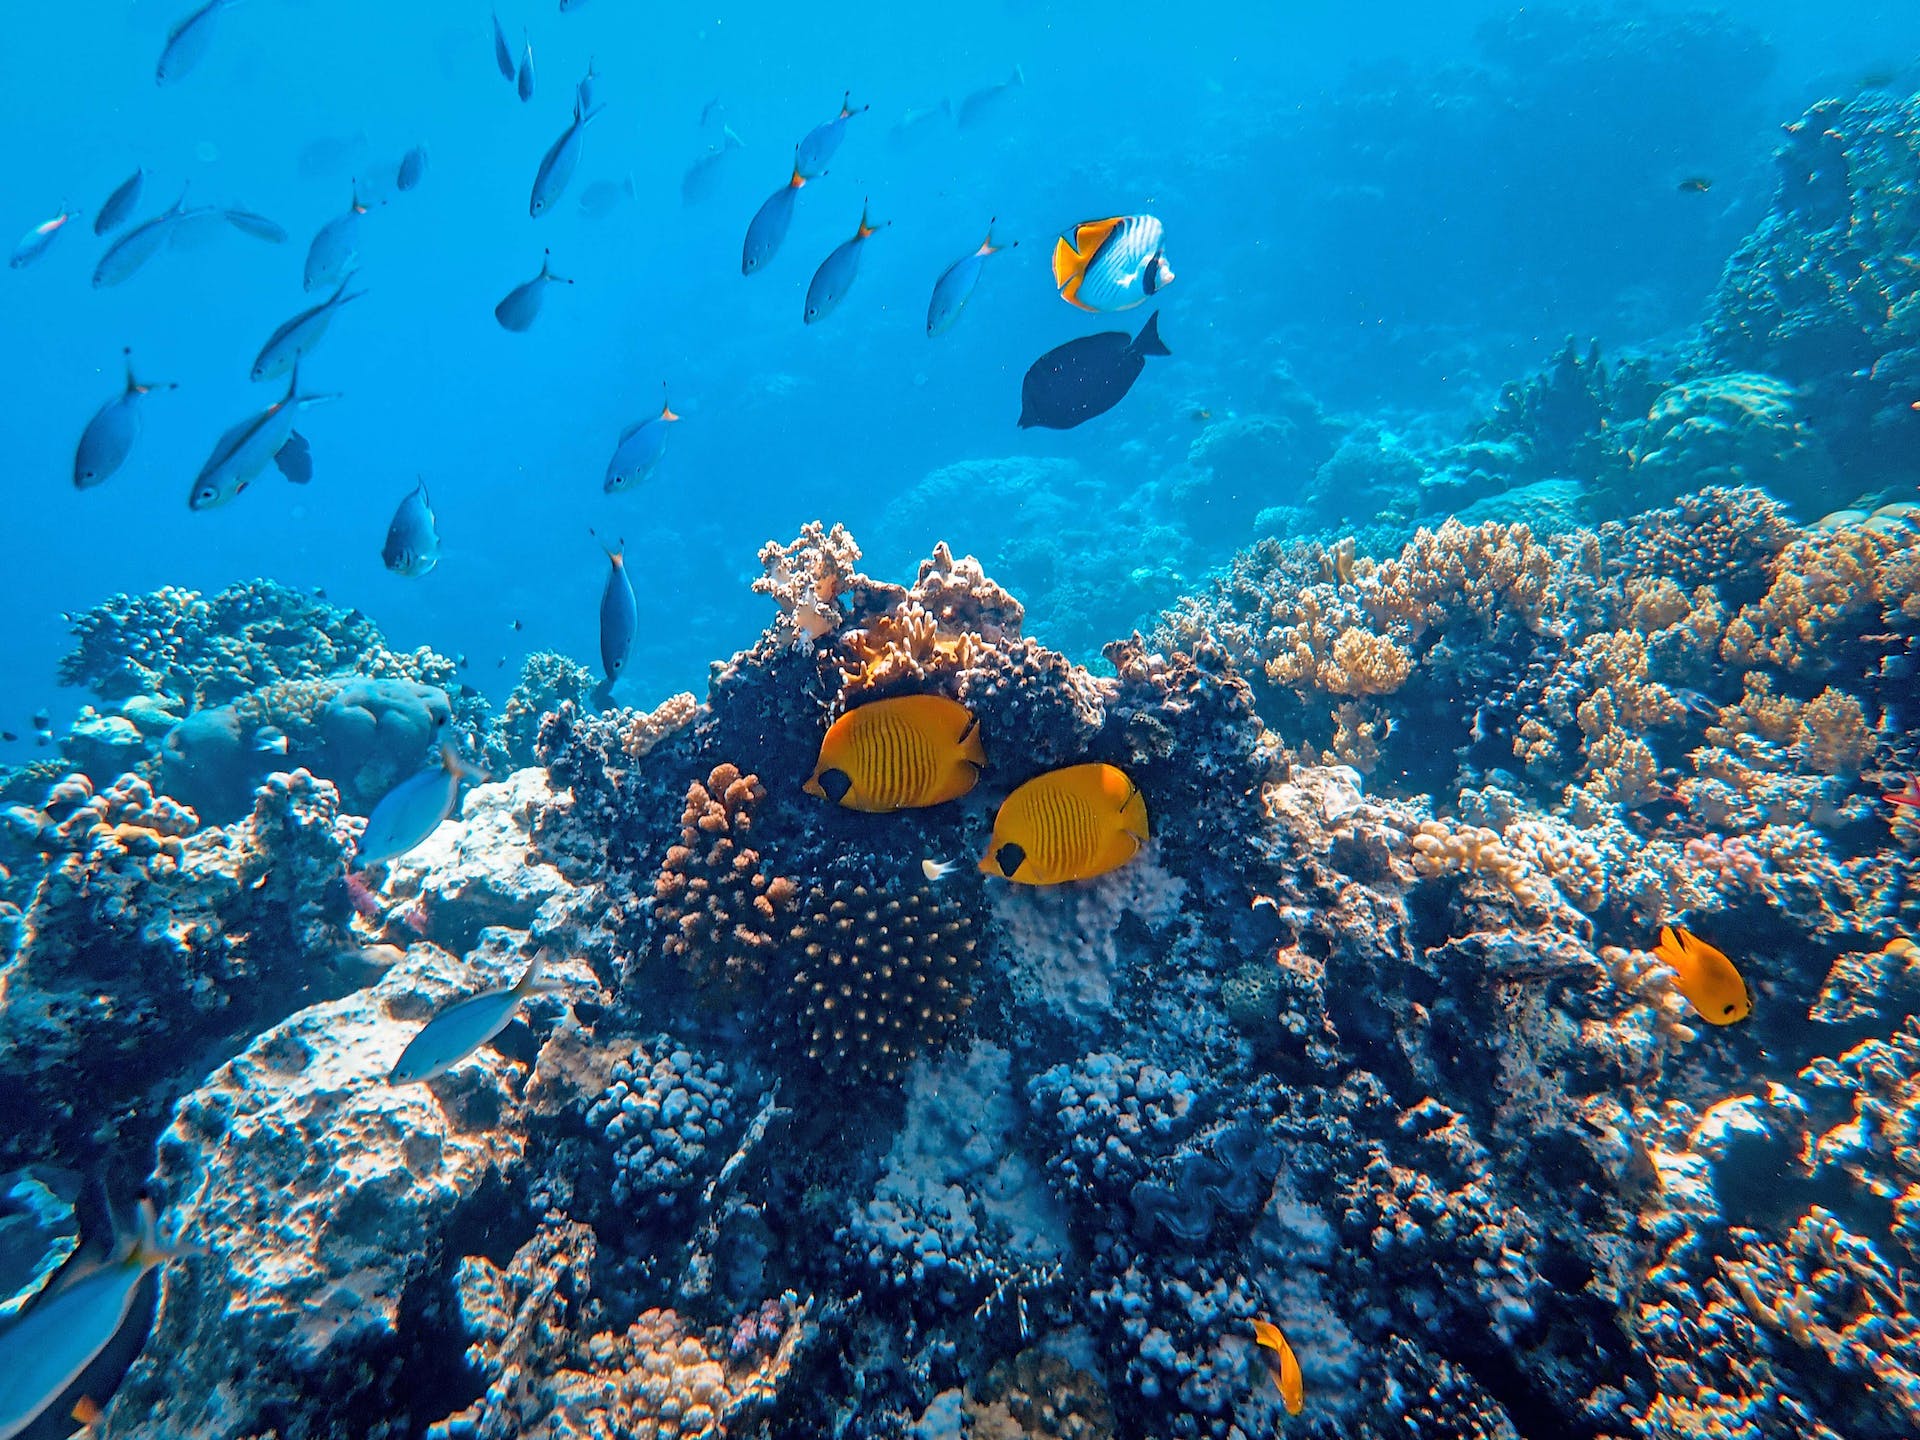 Peces en un arrecife de coral. Fotografía por Francesco Ungaro.